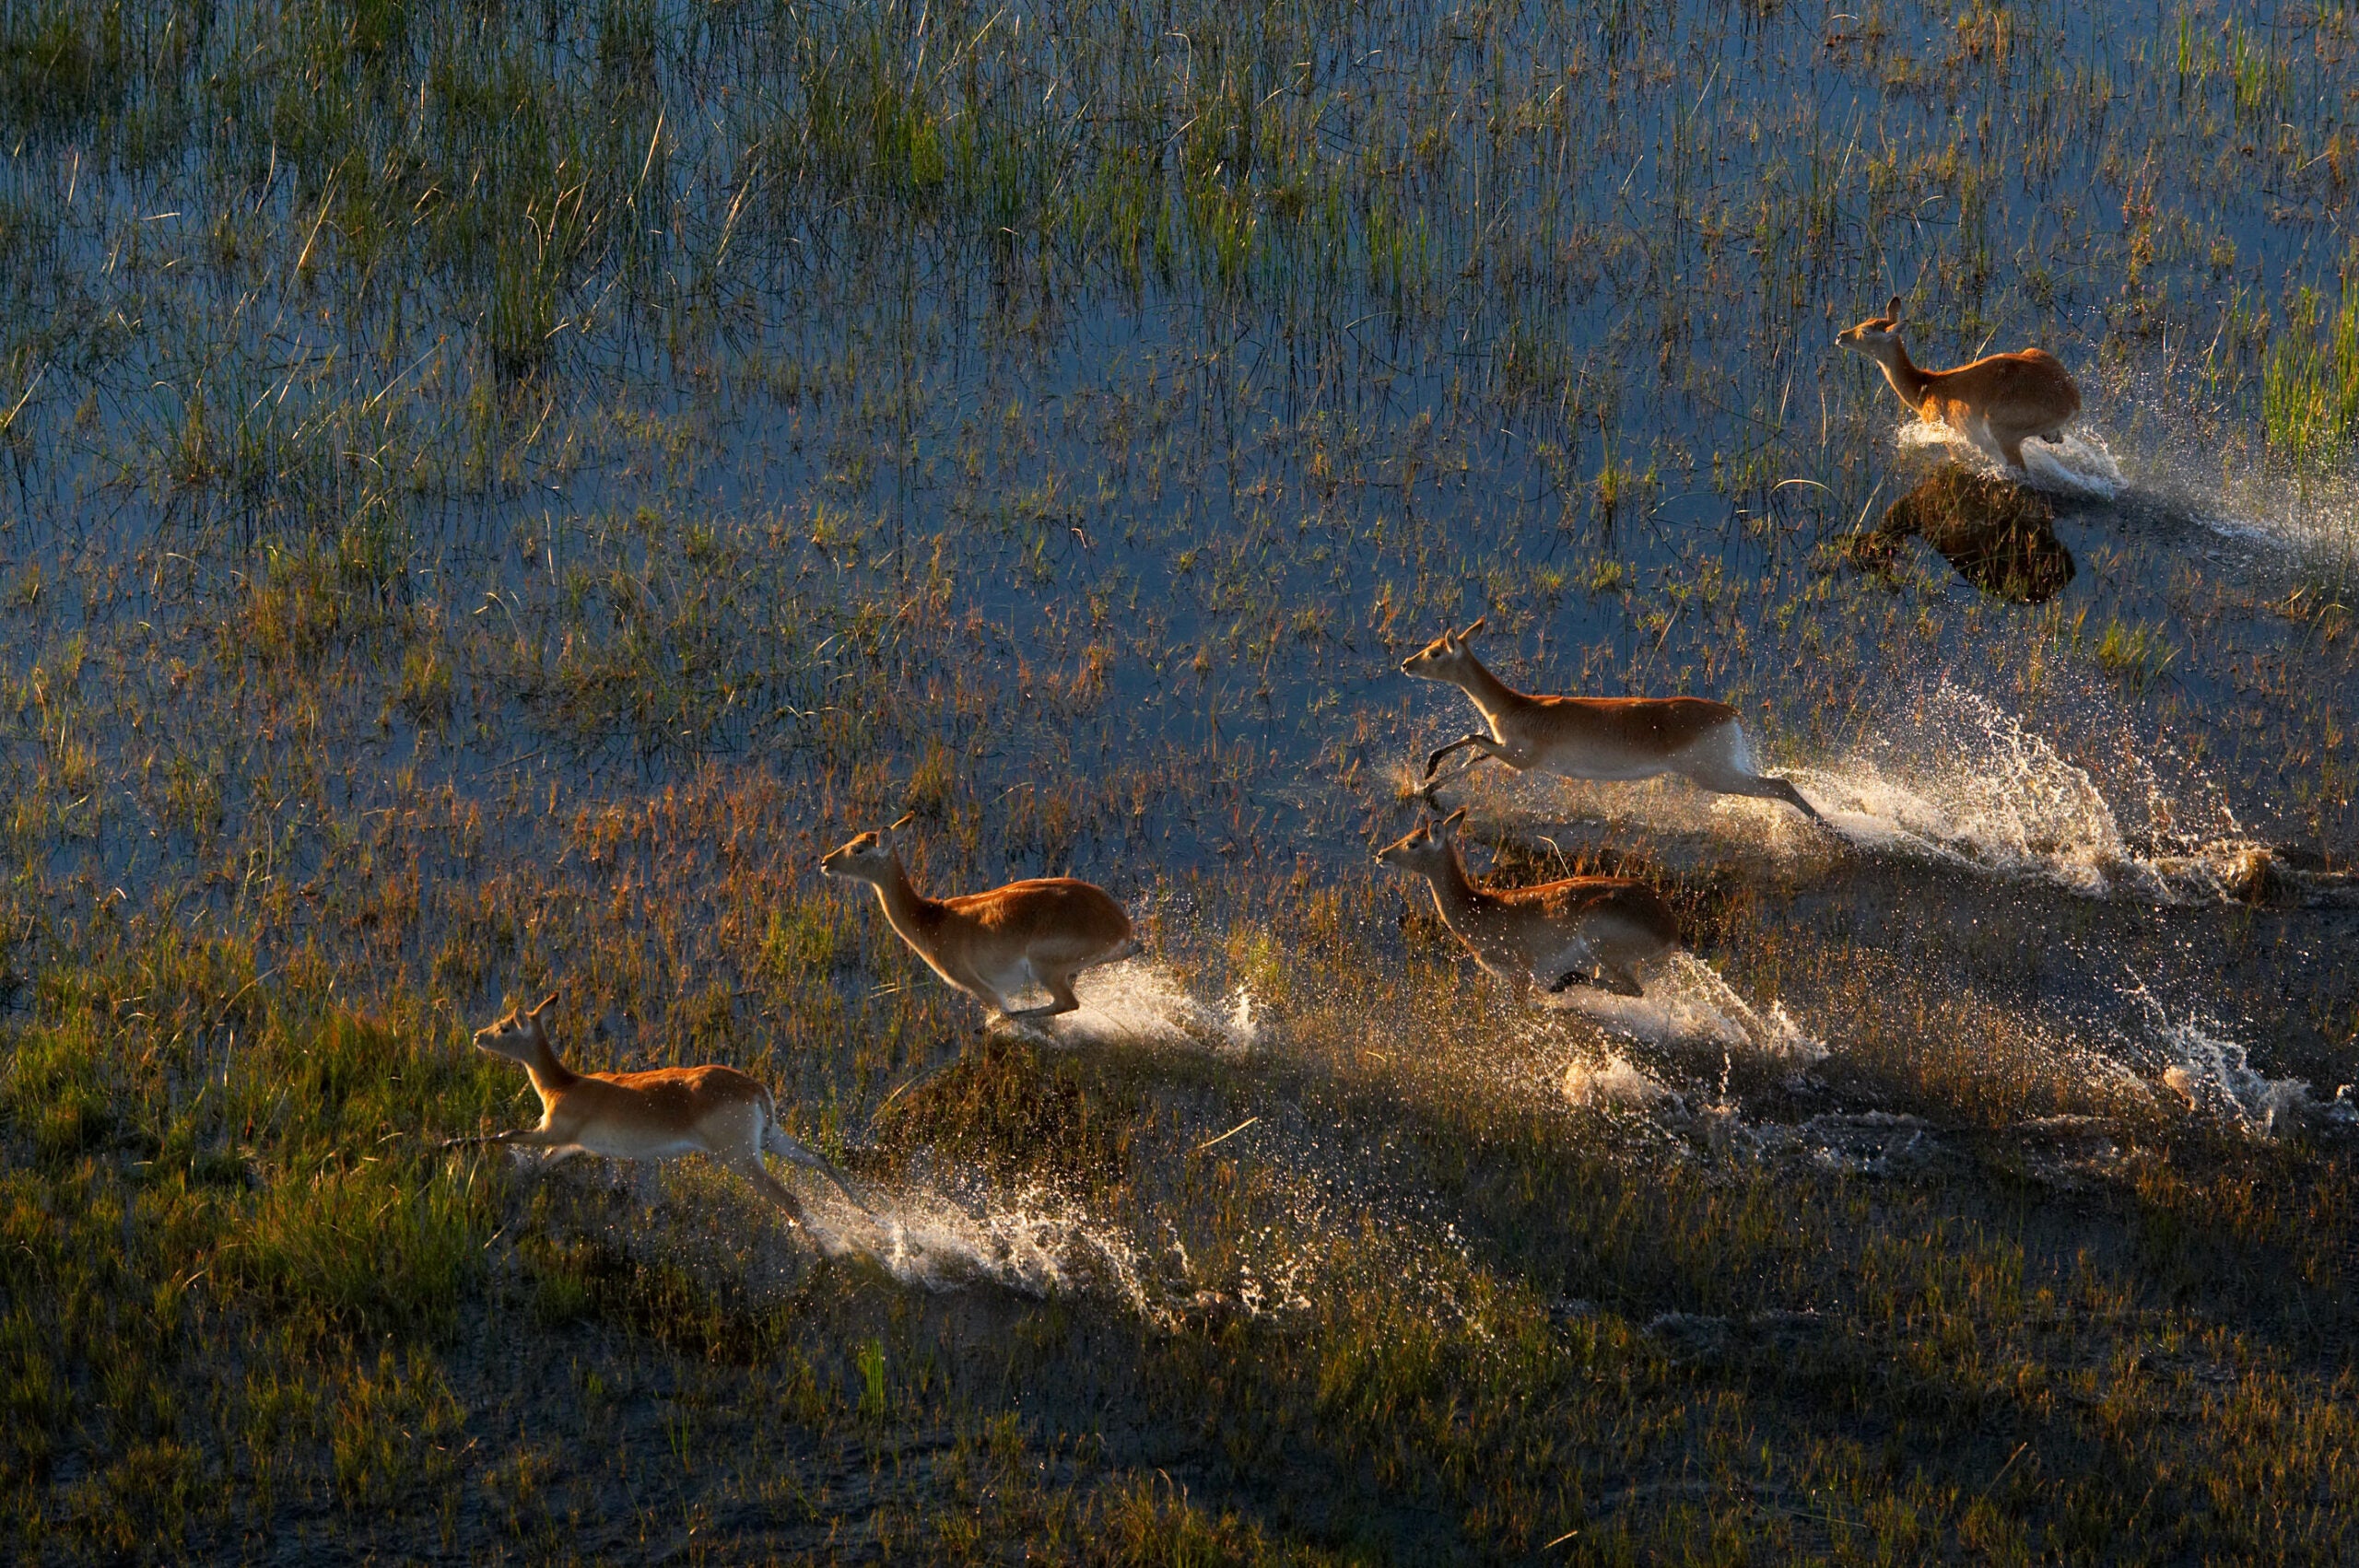 Antelope running through water